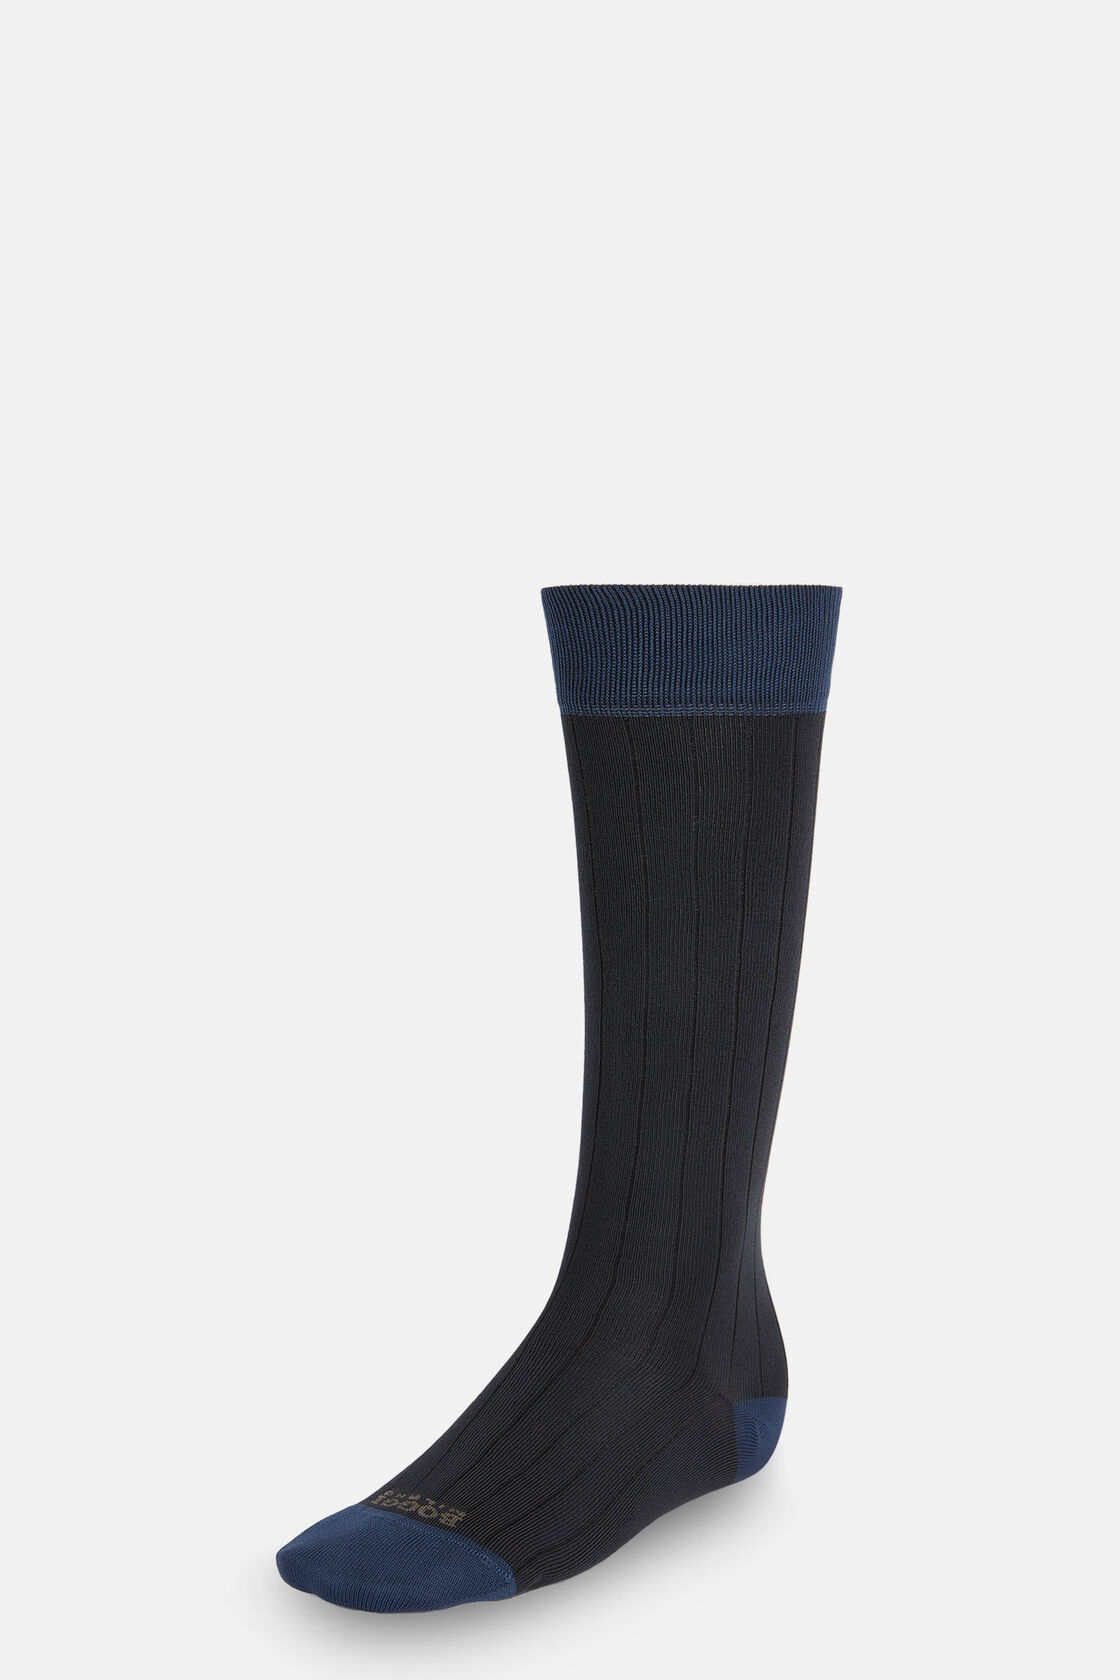 Κάλτσες Με Ραβδώσεις Από Νήματα Απόδοσης, Charcoal, hi-res